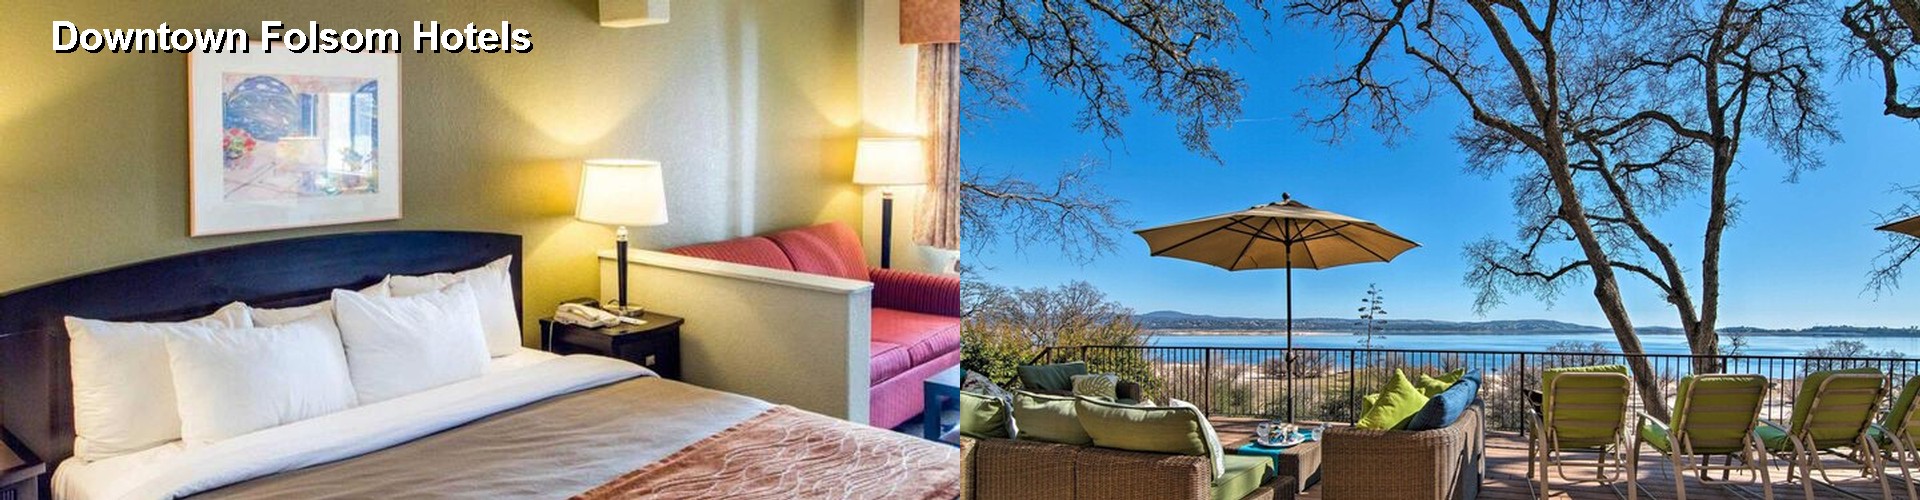 5 Best Hotels near Downtown Folsom